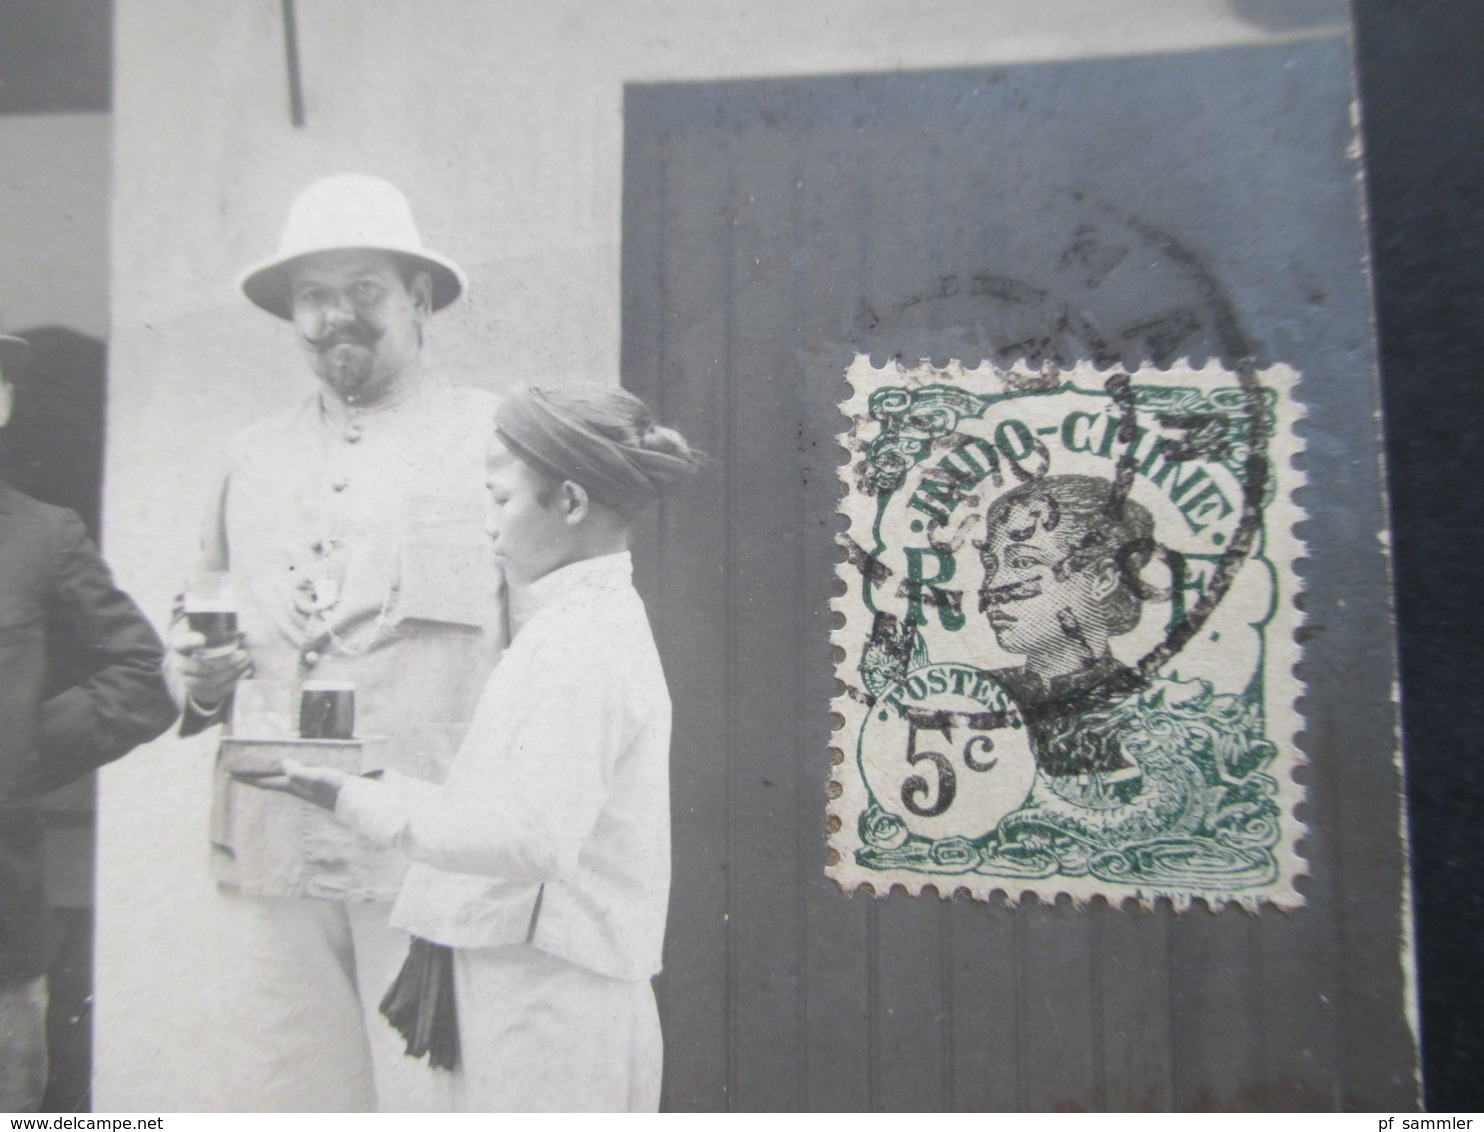 Asien Vietnam Indo Chine 1909 Echtfoto AK Expedition Herren Werden Bedient / Trinken Bier. Roter Kastenstempel - Lettres & Documents